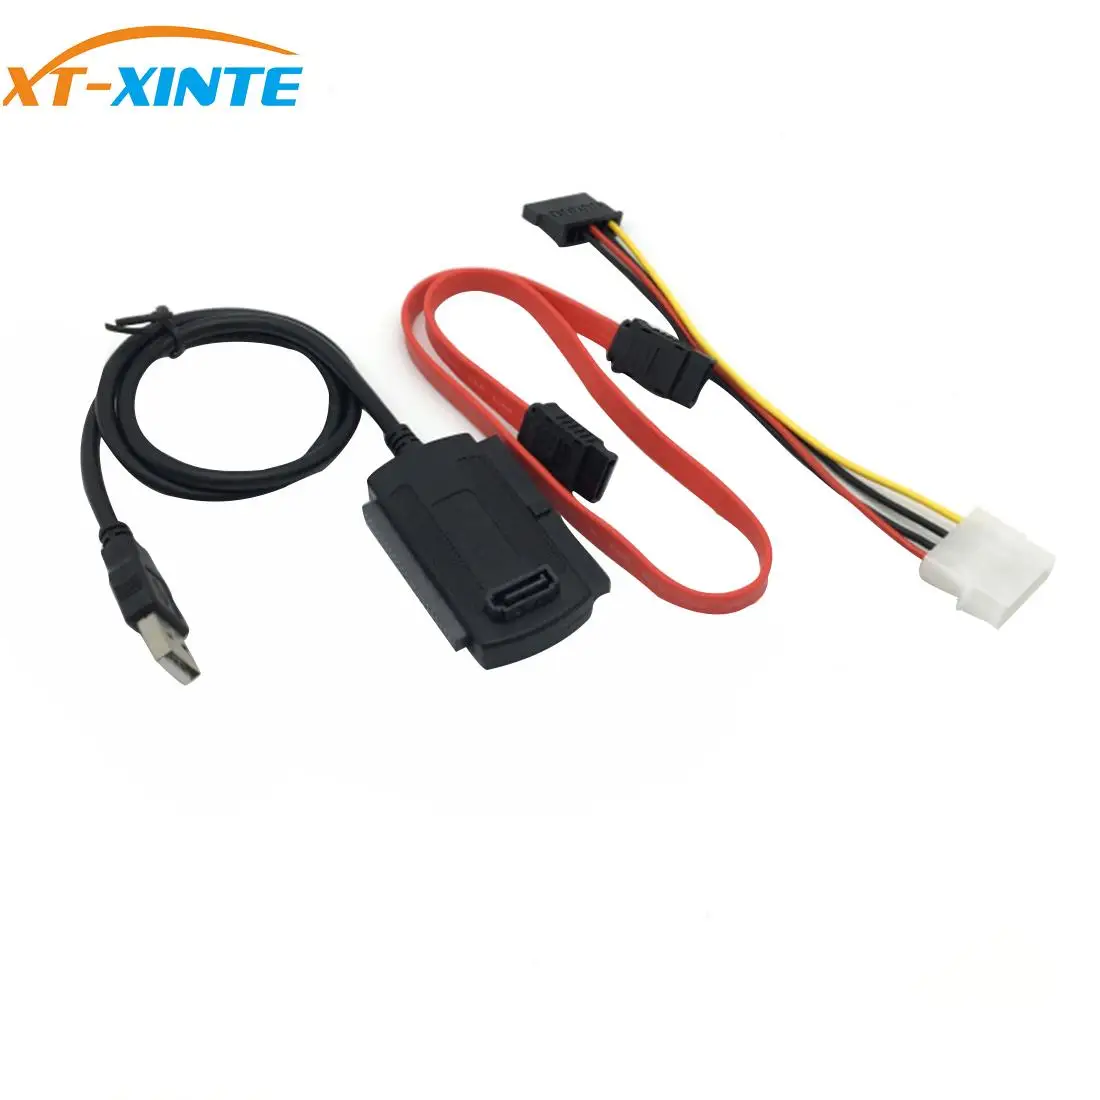 

Кабель-переходник SATA/PATA/IDE на USB 2,0 для жесткого диска HDD 2,5 дюйма 3,5 дюйма, Plug and Play, Высокоскоростная передача данных